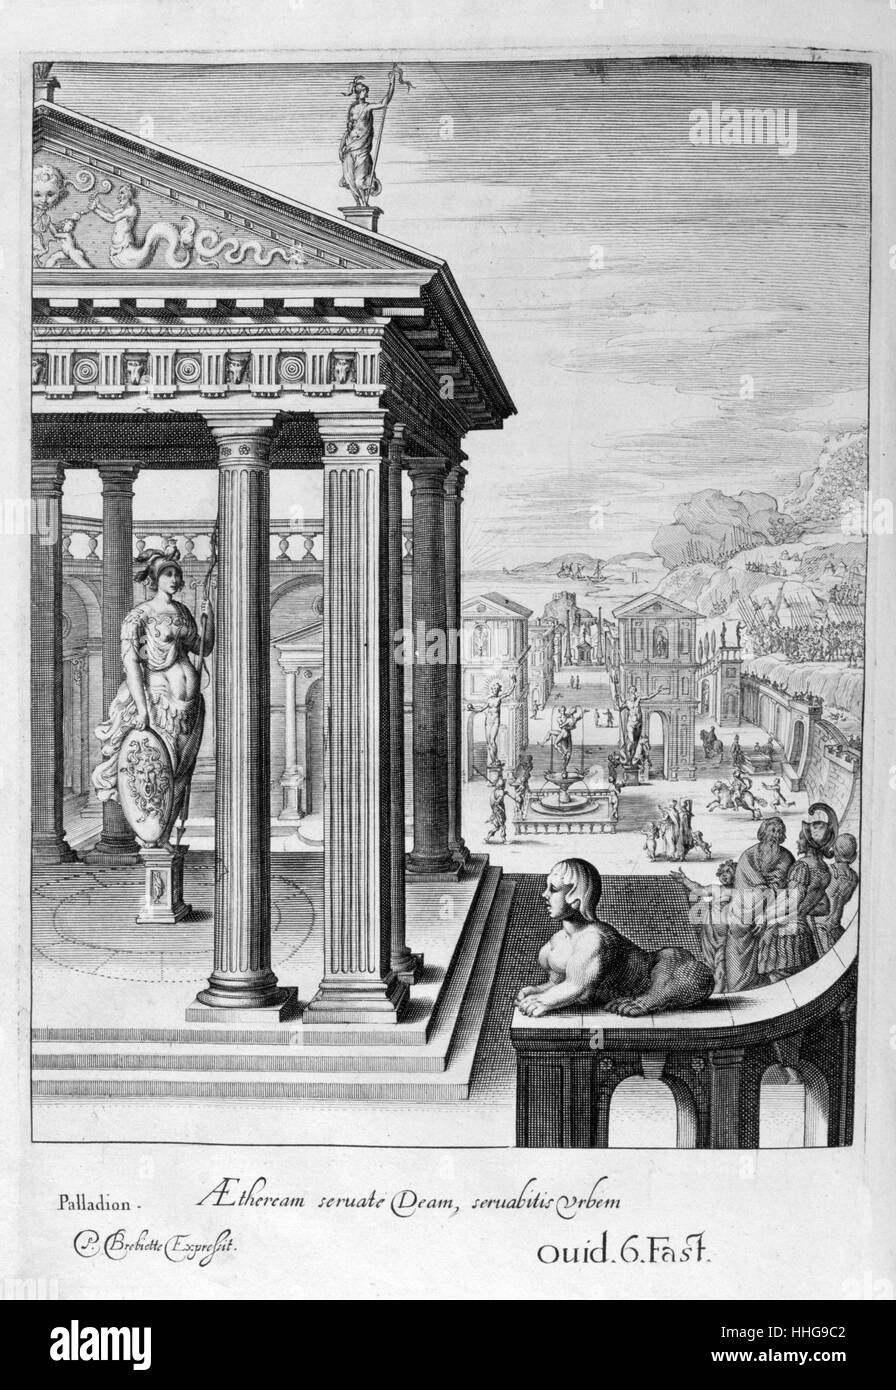 In der griechischen und römischen Mythologie, das Palladium oder Palladion war ein Kult Bild, auf dem die Sicherheit von Troy und später Rom gesagt wurde, die hölzerne Statue (Xoanon) der Pallas Athene, die Odysseus und Diomedes Stola aus Troja, später zu den künftigen Standort von Rom durch Aeneas berücksichtigt wurde. Gravur von "Tableaux du Temple des muses" (1655) von Michel de Marolles (1600 - 1681), bekannt als der Abbé de Marolles; eine französische Kirchenmann und Übersetzer. Stockfoto